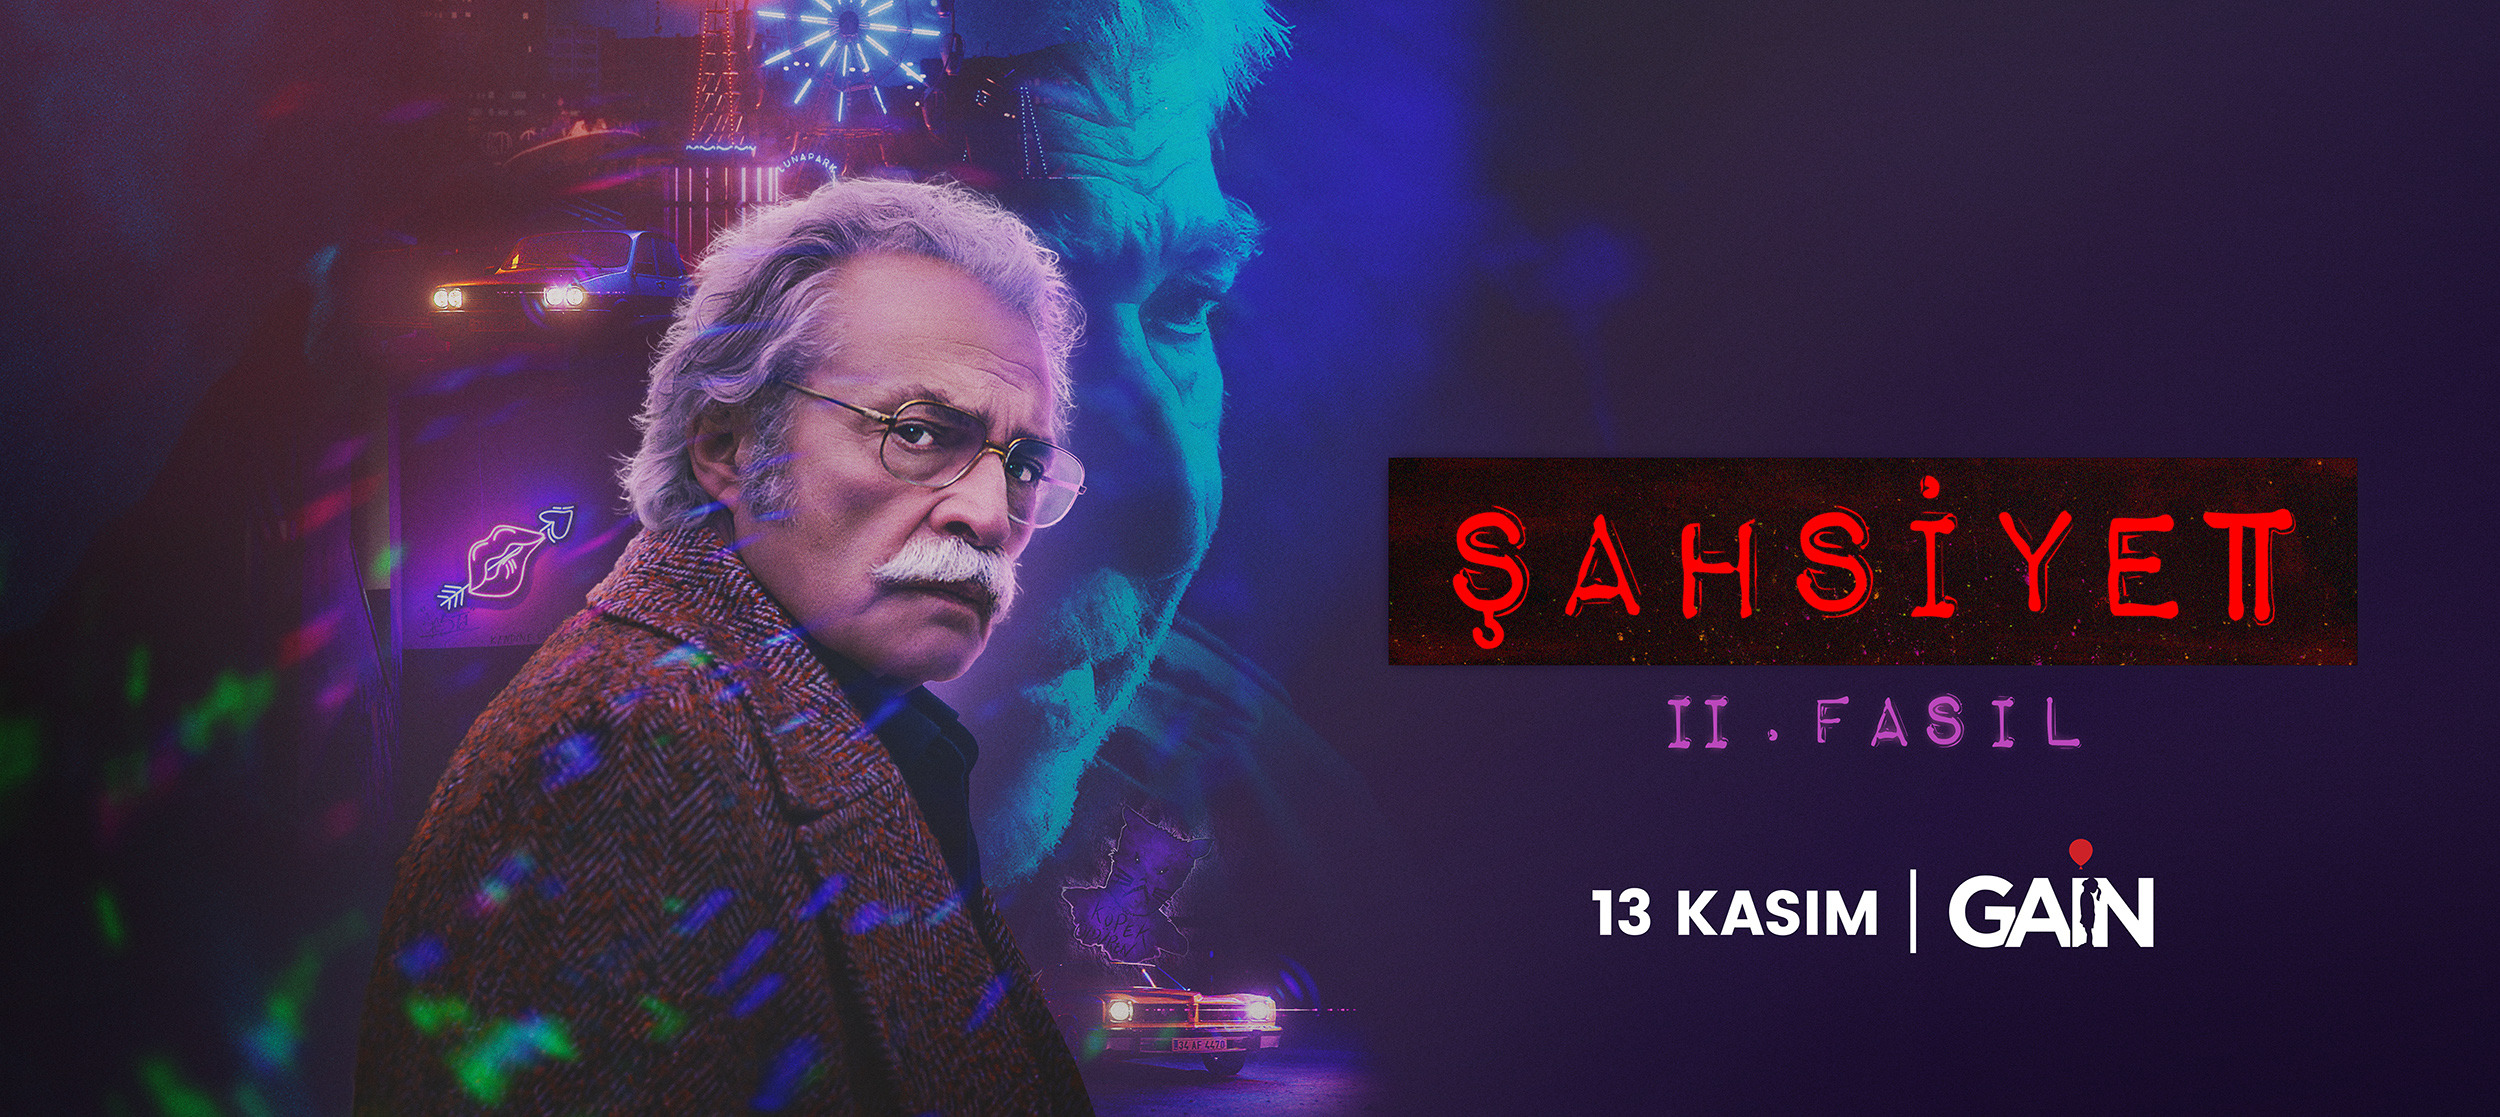 Mega Sized TV Poster Image for Sahsiyet (#4 of 6)